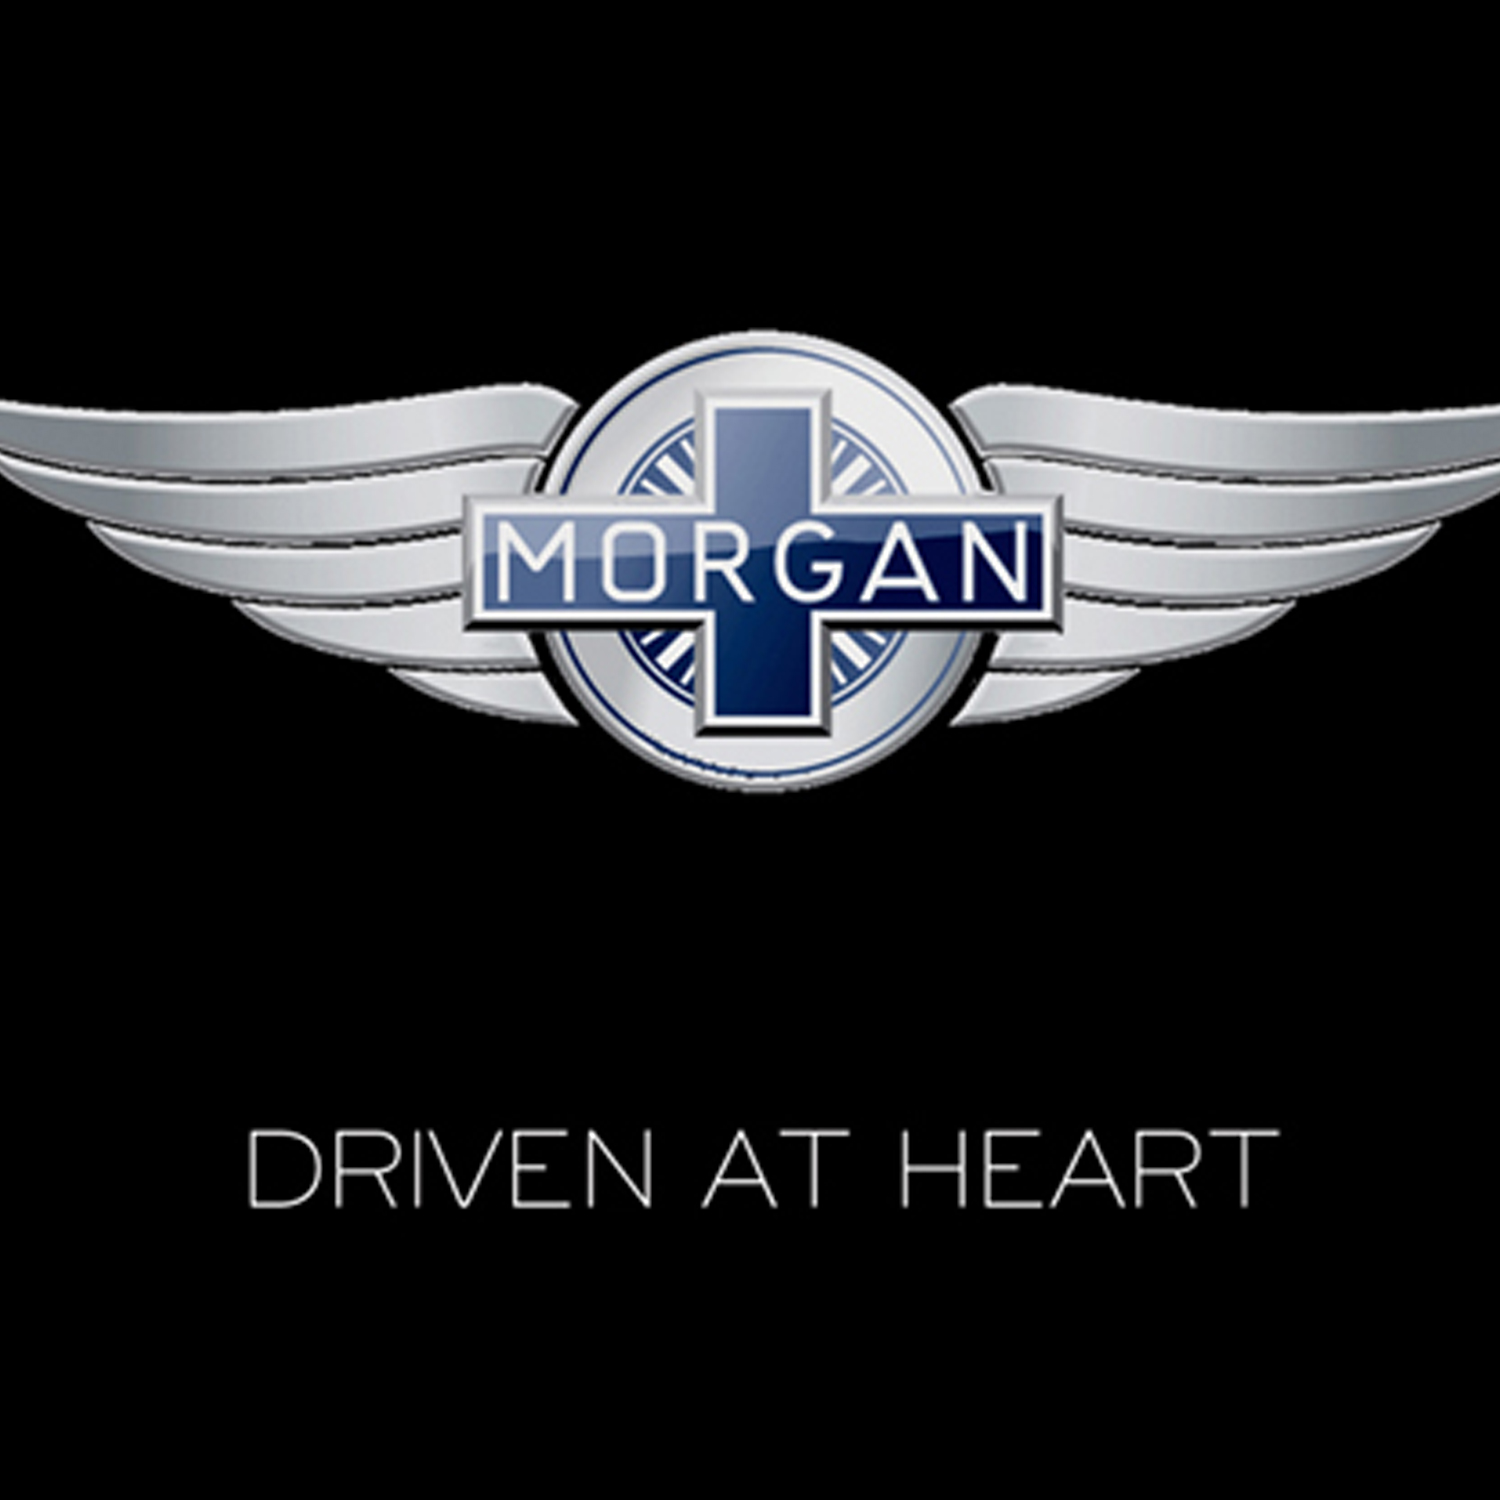 Morgan logo car emblem